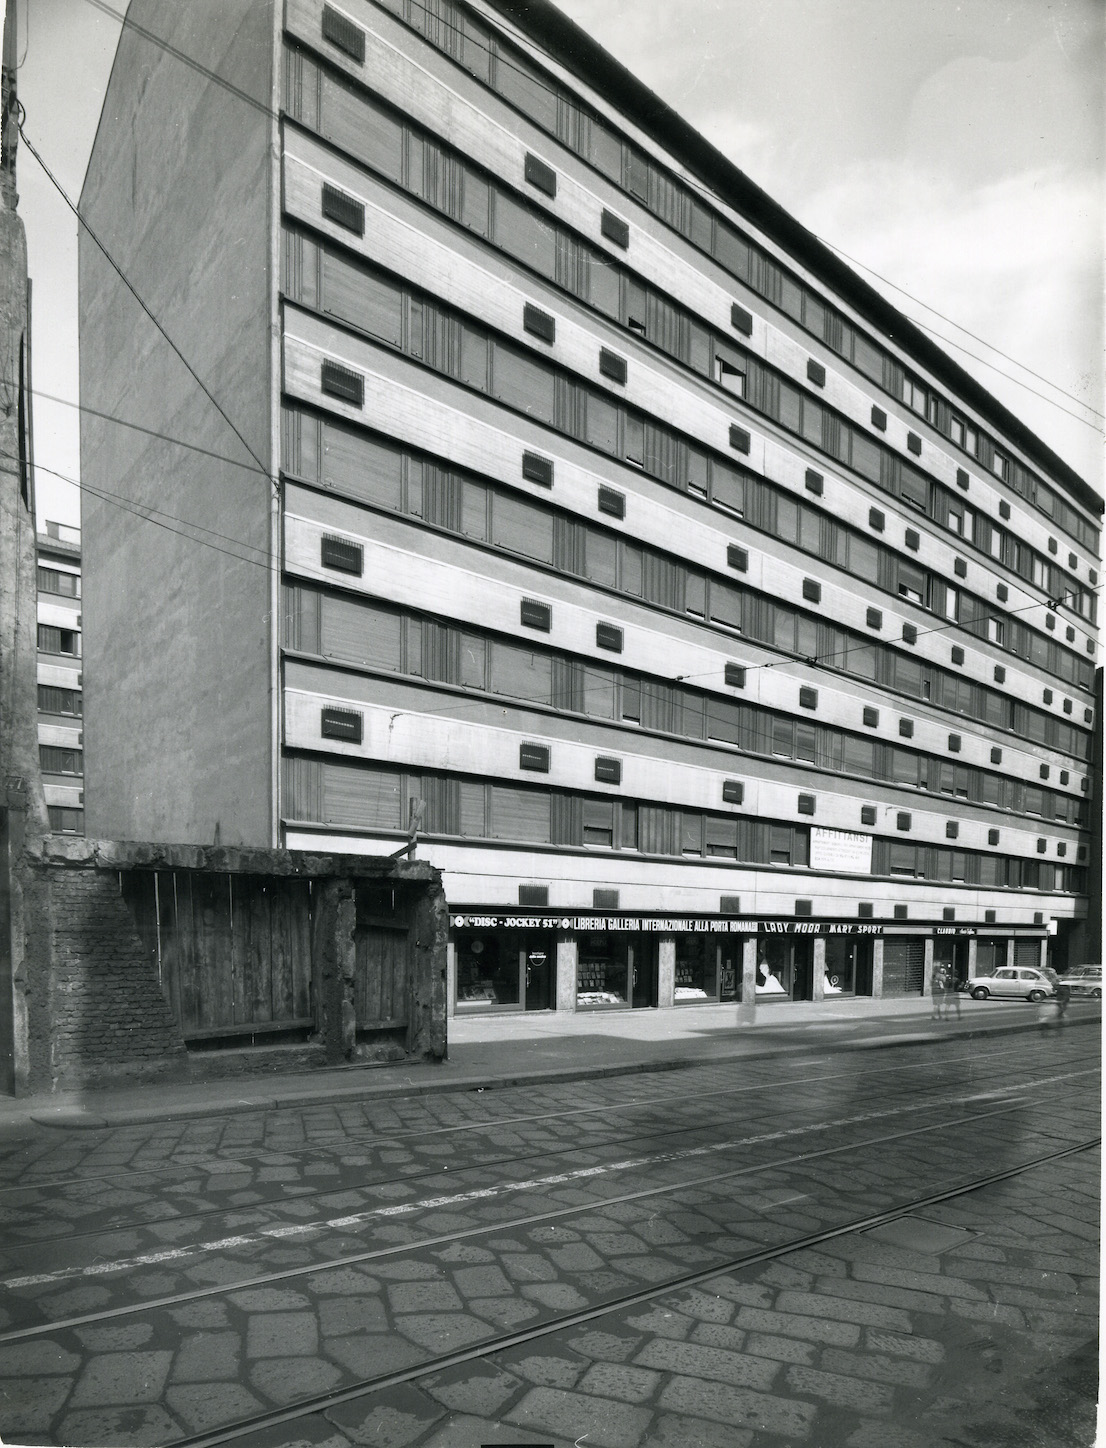 Casa per abitazioni, corso di Porta Romana 49-51-53, 1962/67. Progetto di Vico Magistretti. Foto di Pegoraro.